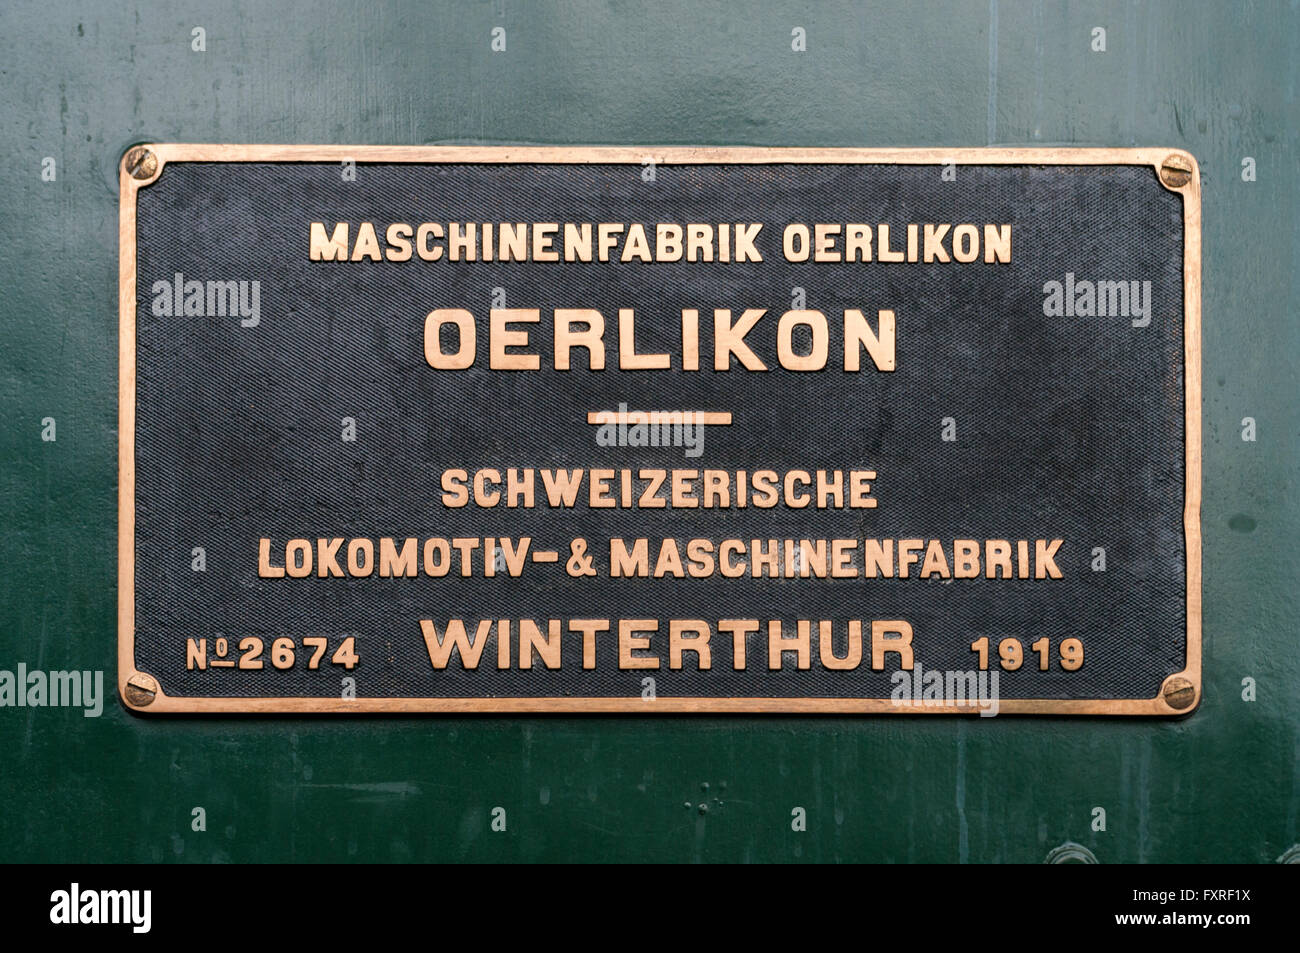 Locomotive manufacturer sign listing Maschinenfabrik Oerlikon and Schweizerische Lokomotiv- und Maschinenfabrik. Stock Photo